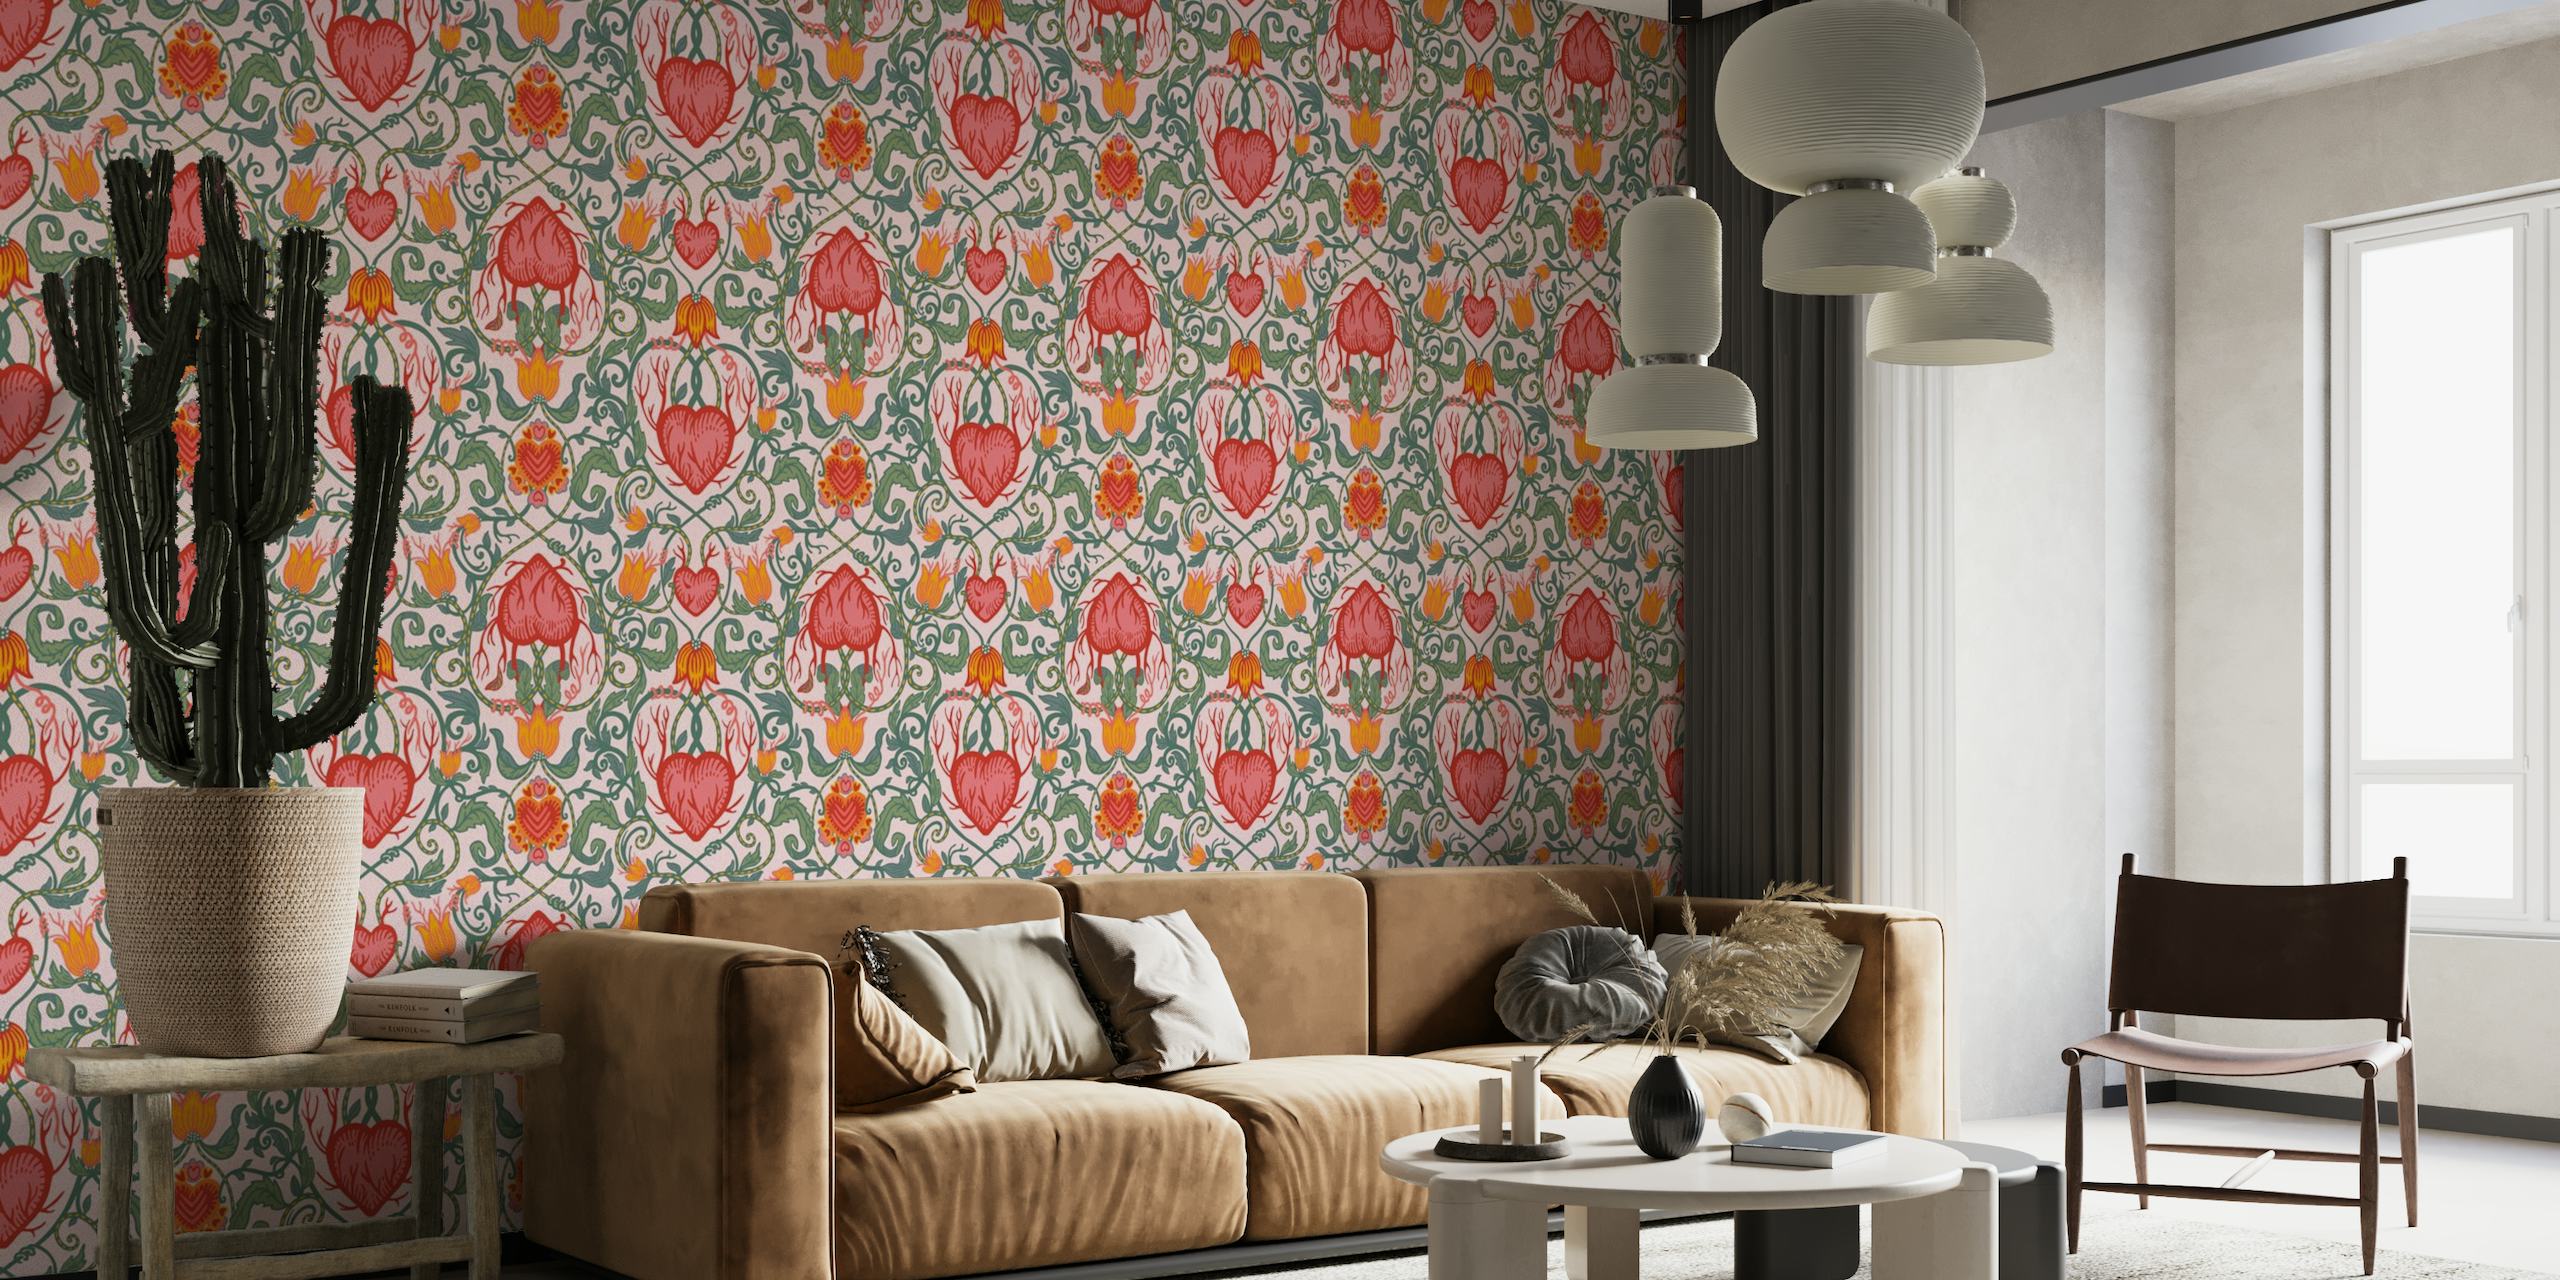 Mural de parede em estilo vitoriano com corações do dia dos namorados e padrões florais